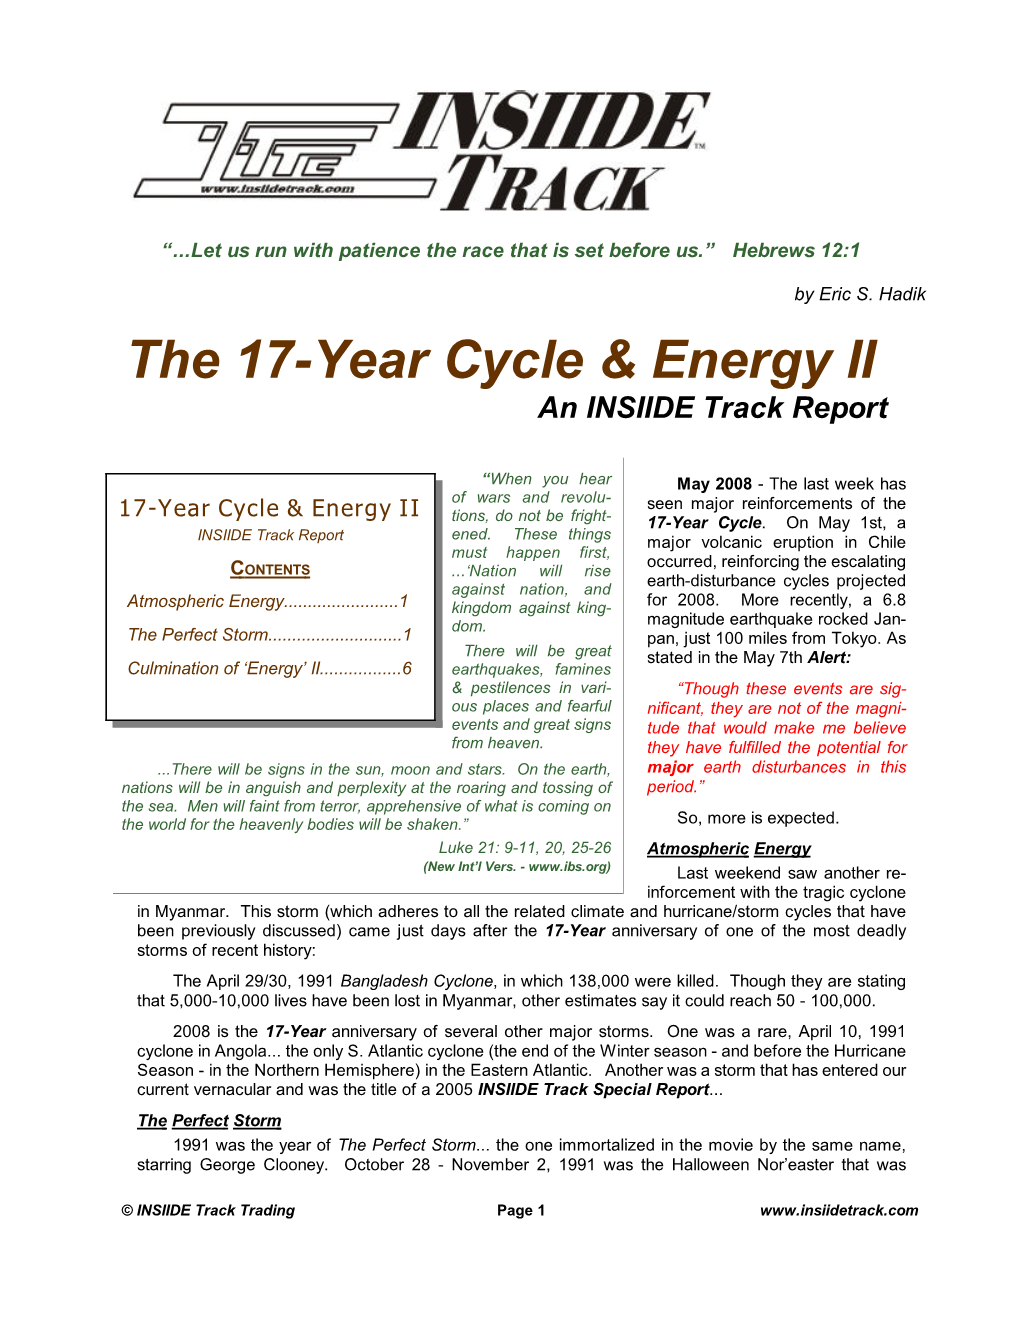 The 17-Year Cycle & Energy II